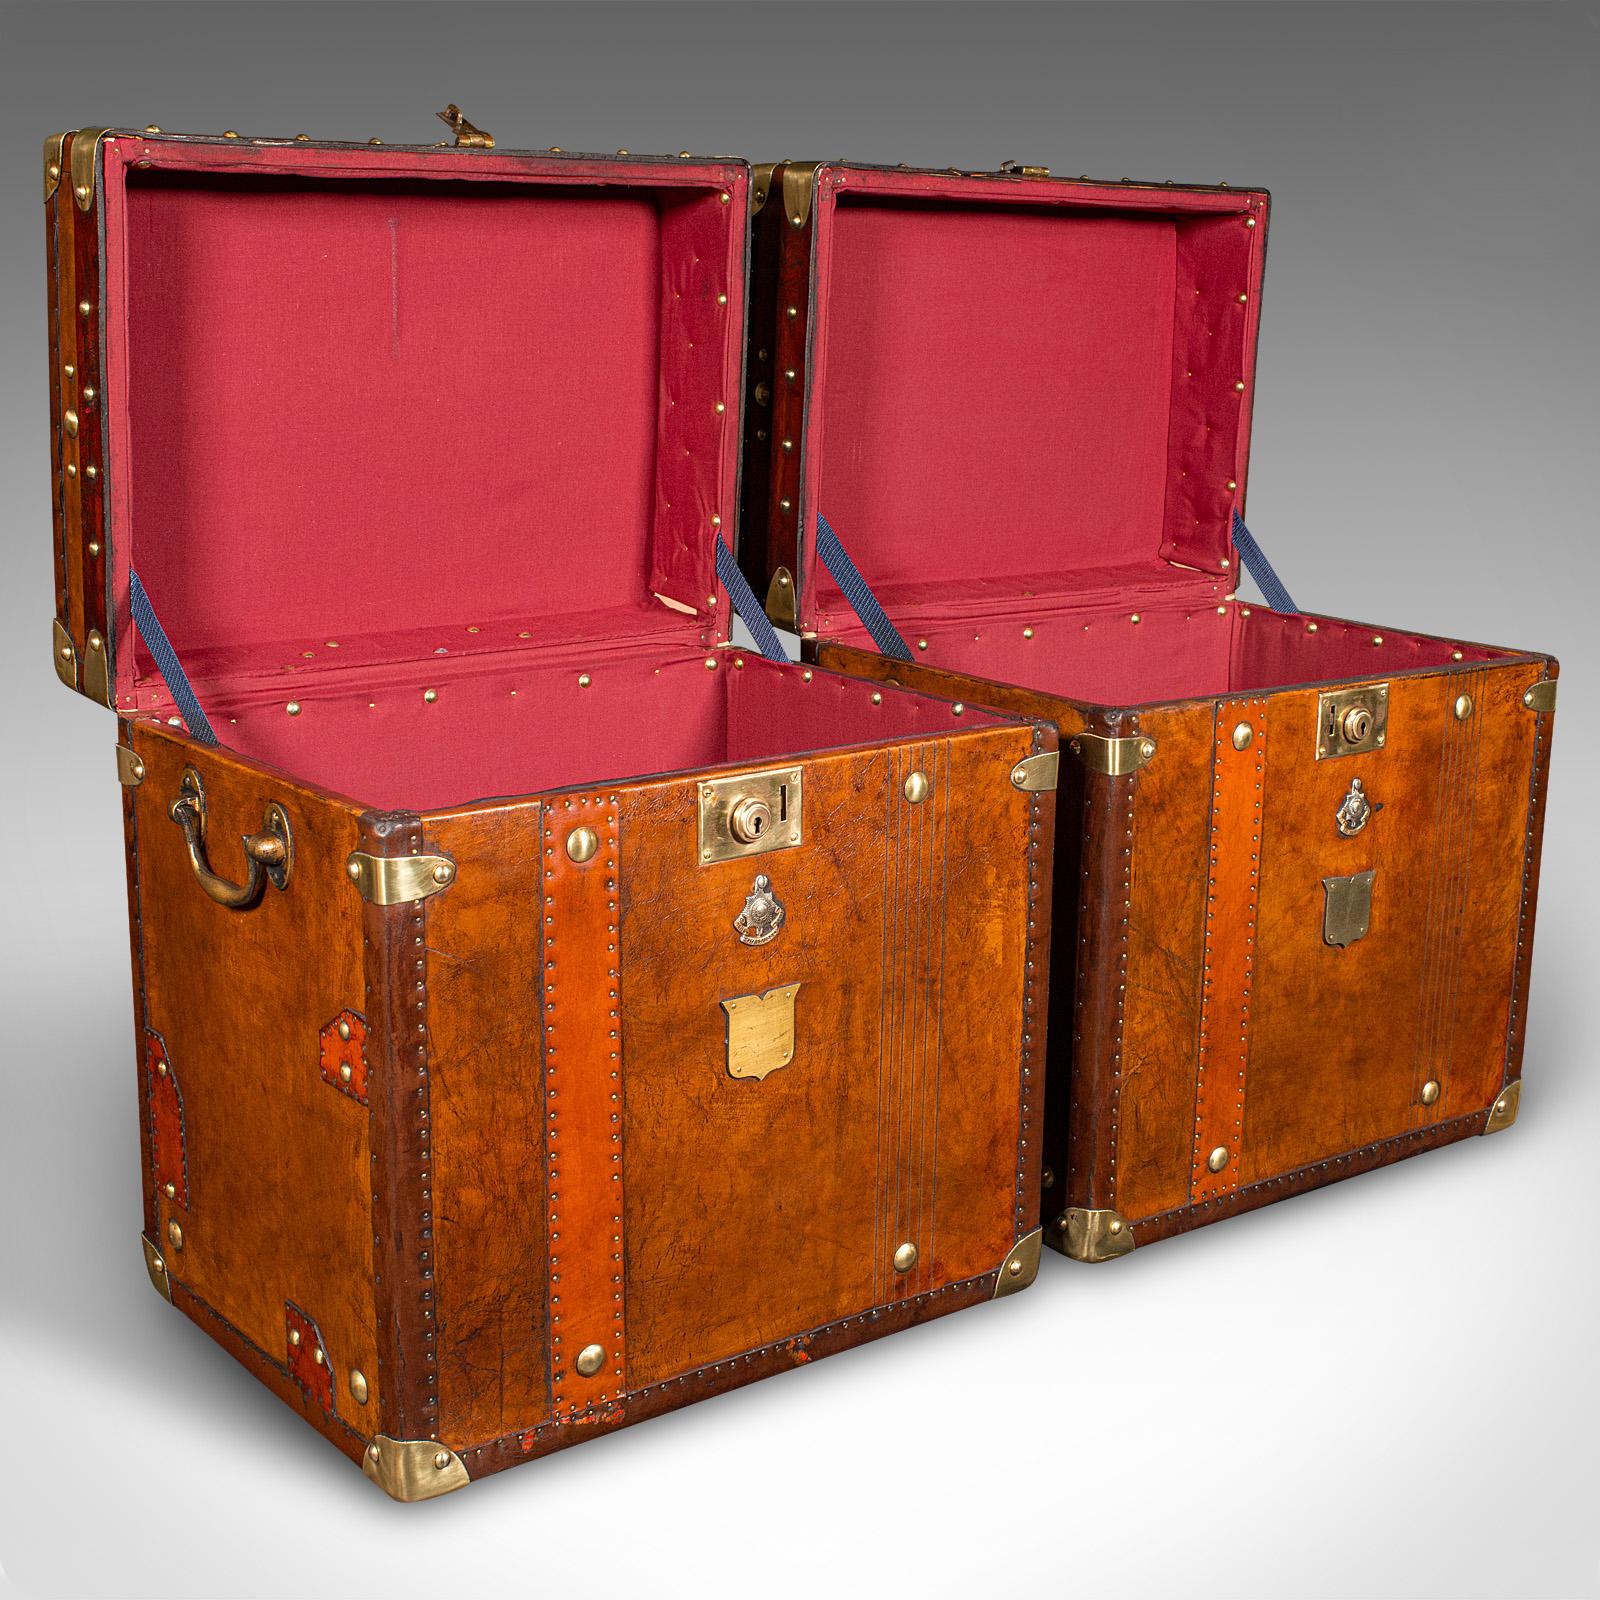 Dies ist ein Paar von Vintage-Offizierskampagne Gepäckkoffer. Ein englischer Nachttisch aus Leder und Messing, aus dem späten 20. Jahrhundert, um 1980.

Exquisite Verkleidungen, mit schön gestalteten Details und Oberflächen
Zeigt eine wünschenswerte